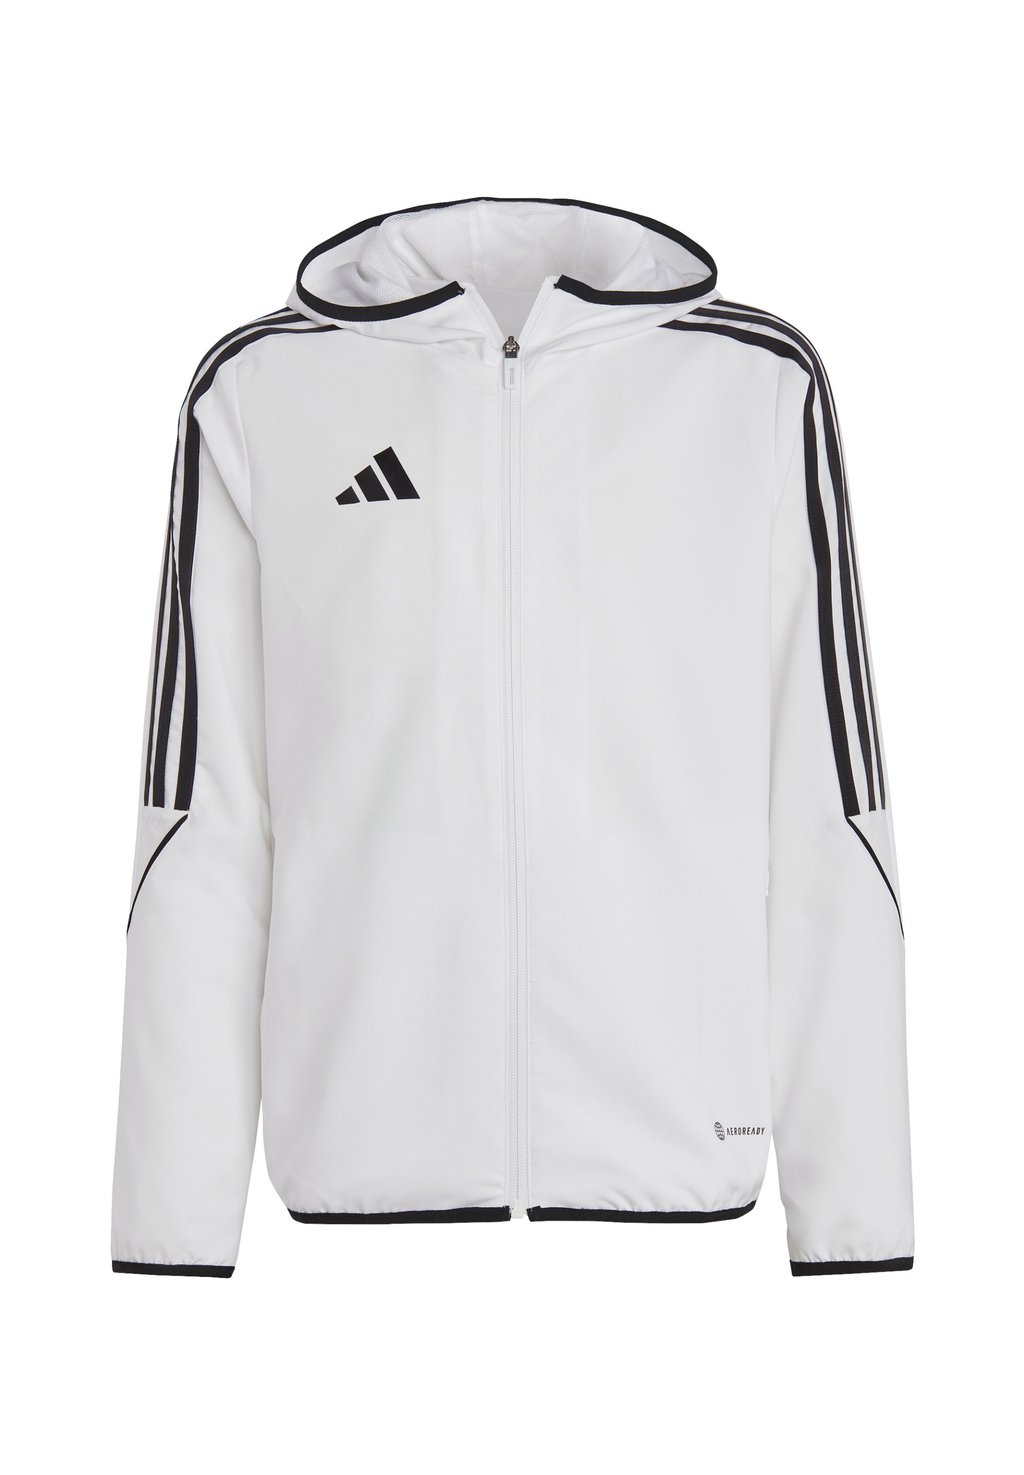 Спортивная куртка Tiro 23 League Adidas, цвет weiss